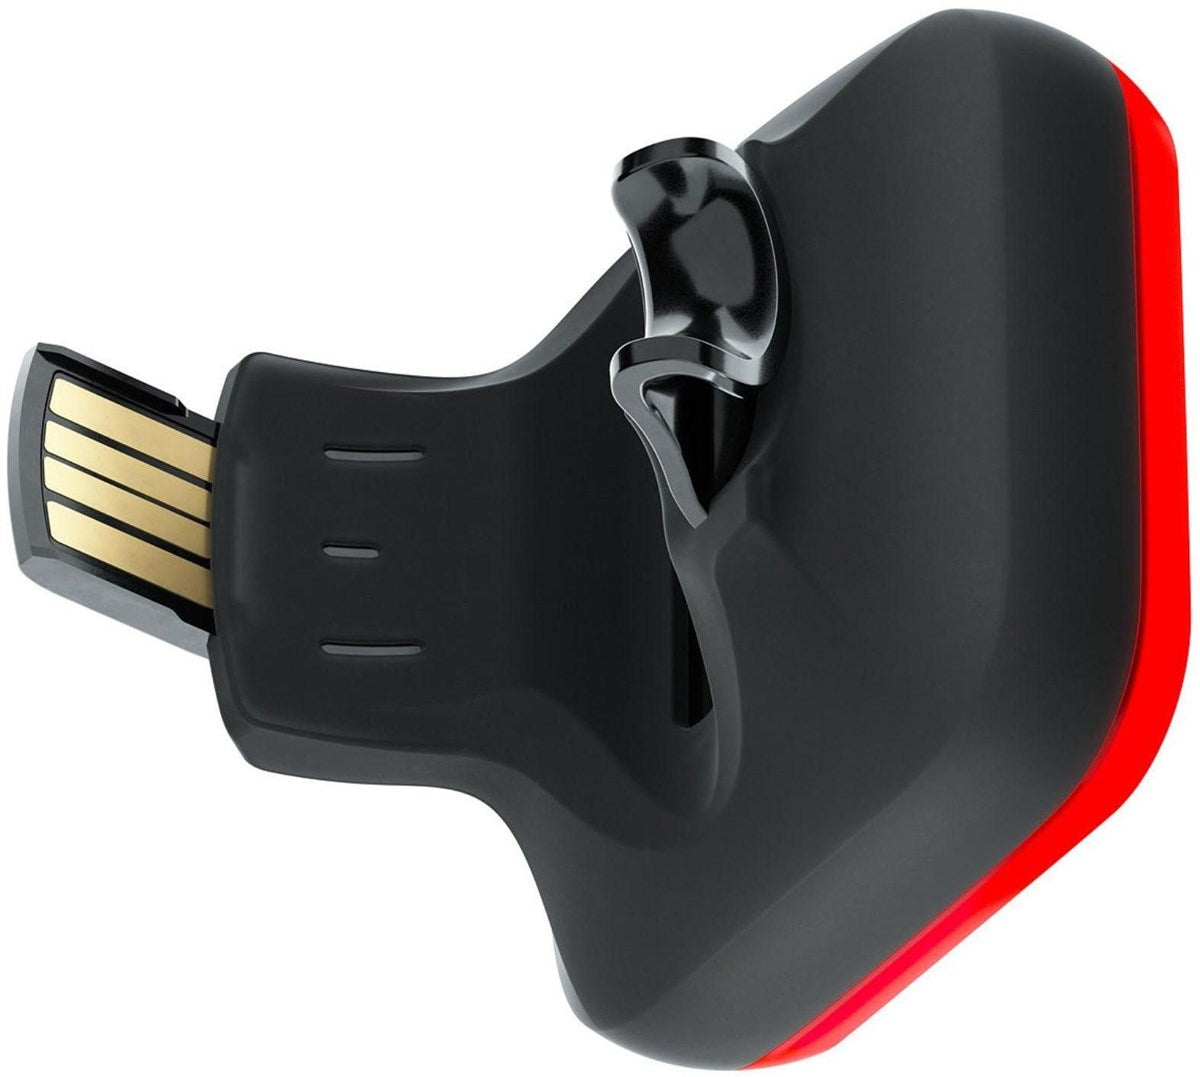 Knog Blinder Square USB Rechargeable Rear Light image #4